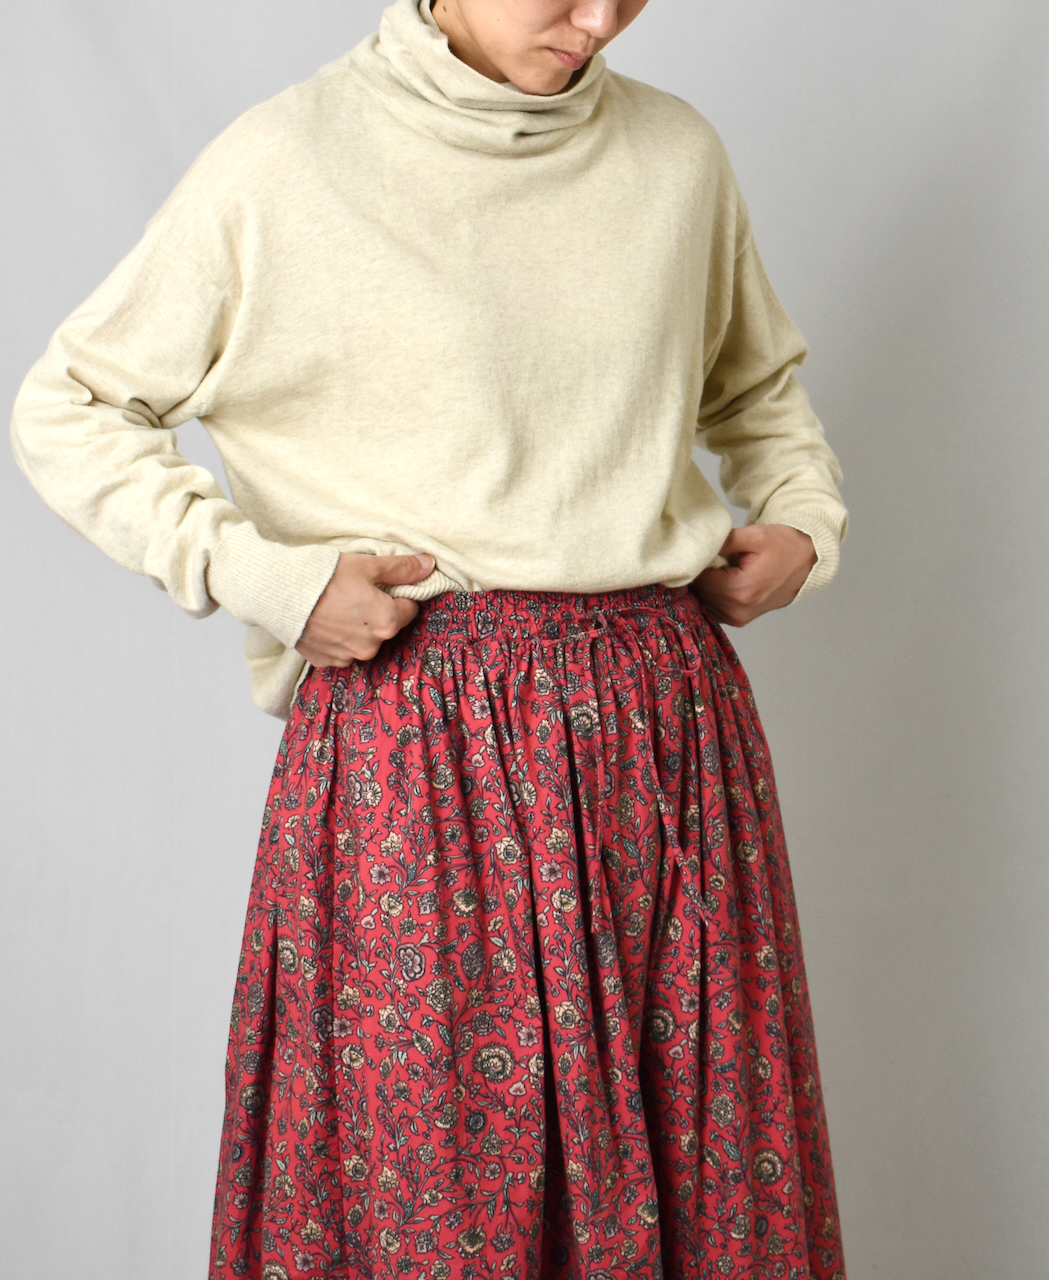 neith./Denim Skirt With Legcover デニムスカート - ミニスカート